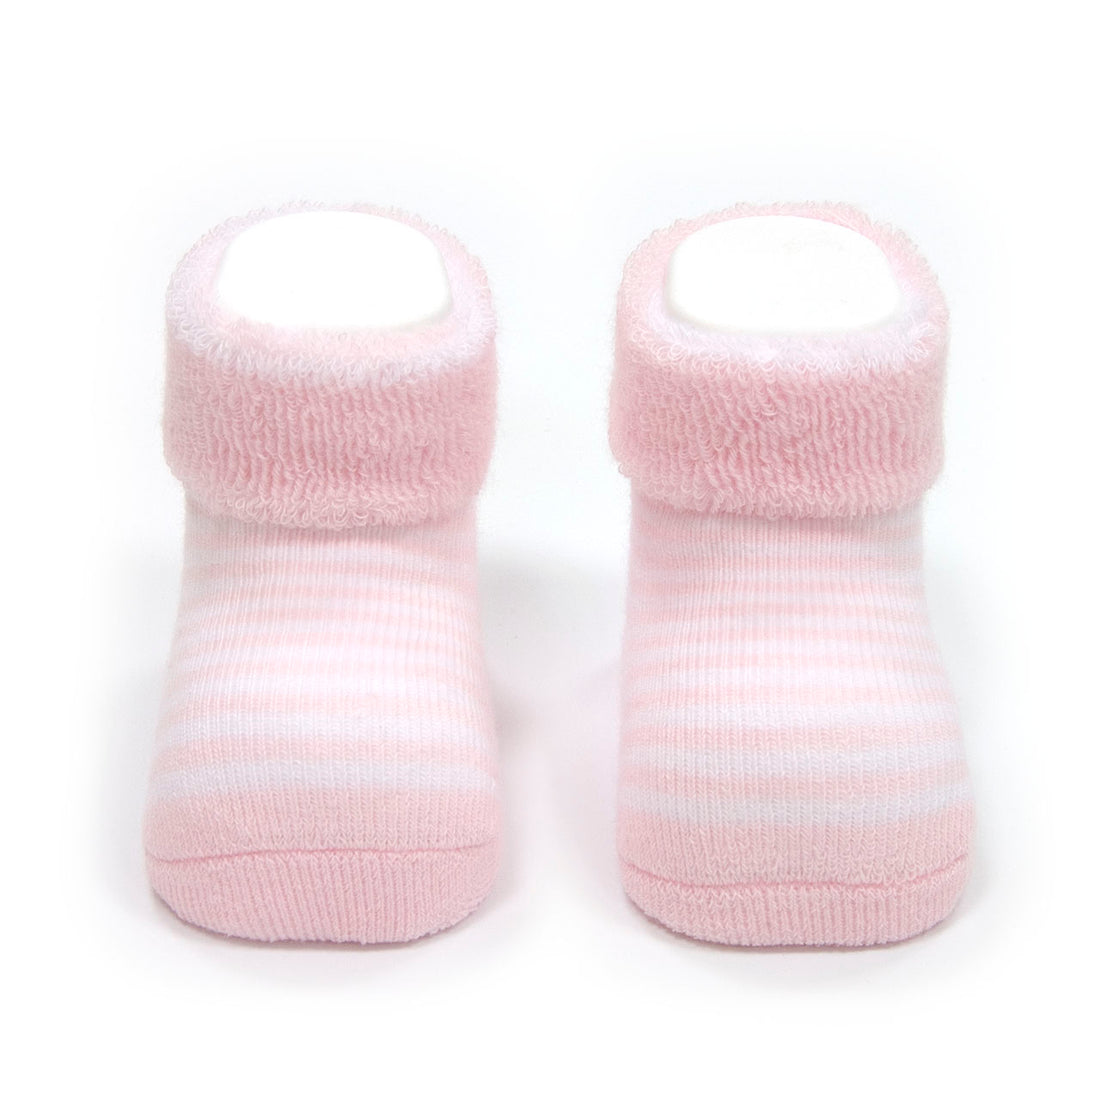 r&j-cambrass-sa-socks-for-baby-listado-562-pink- (2)